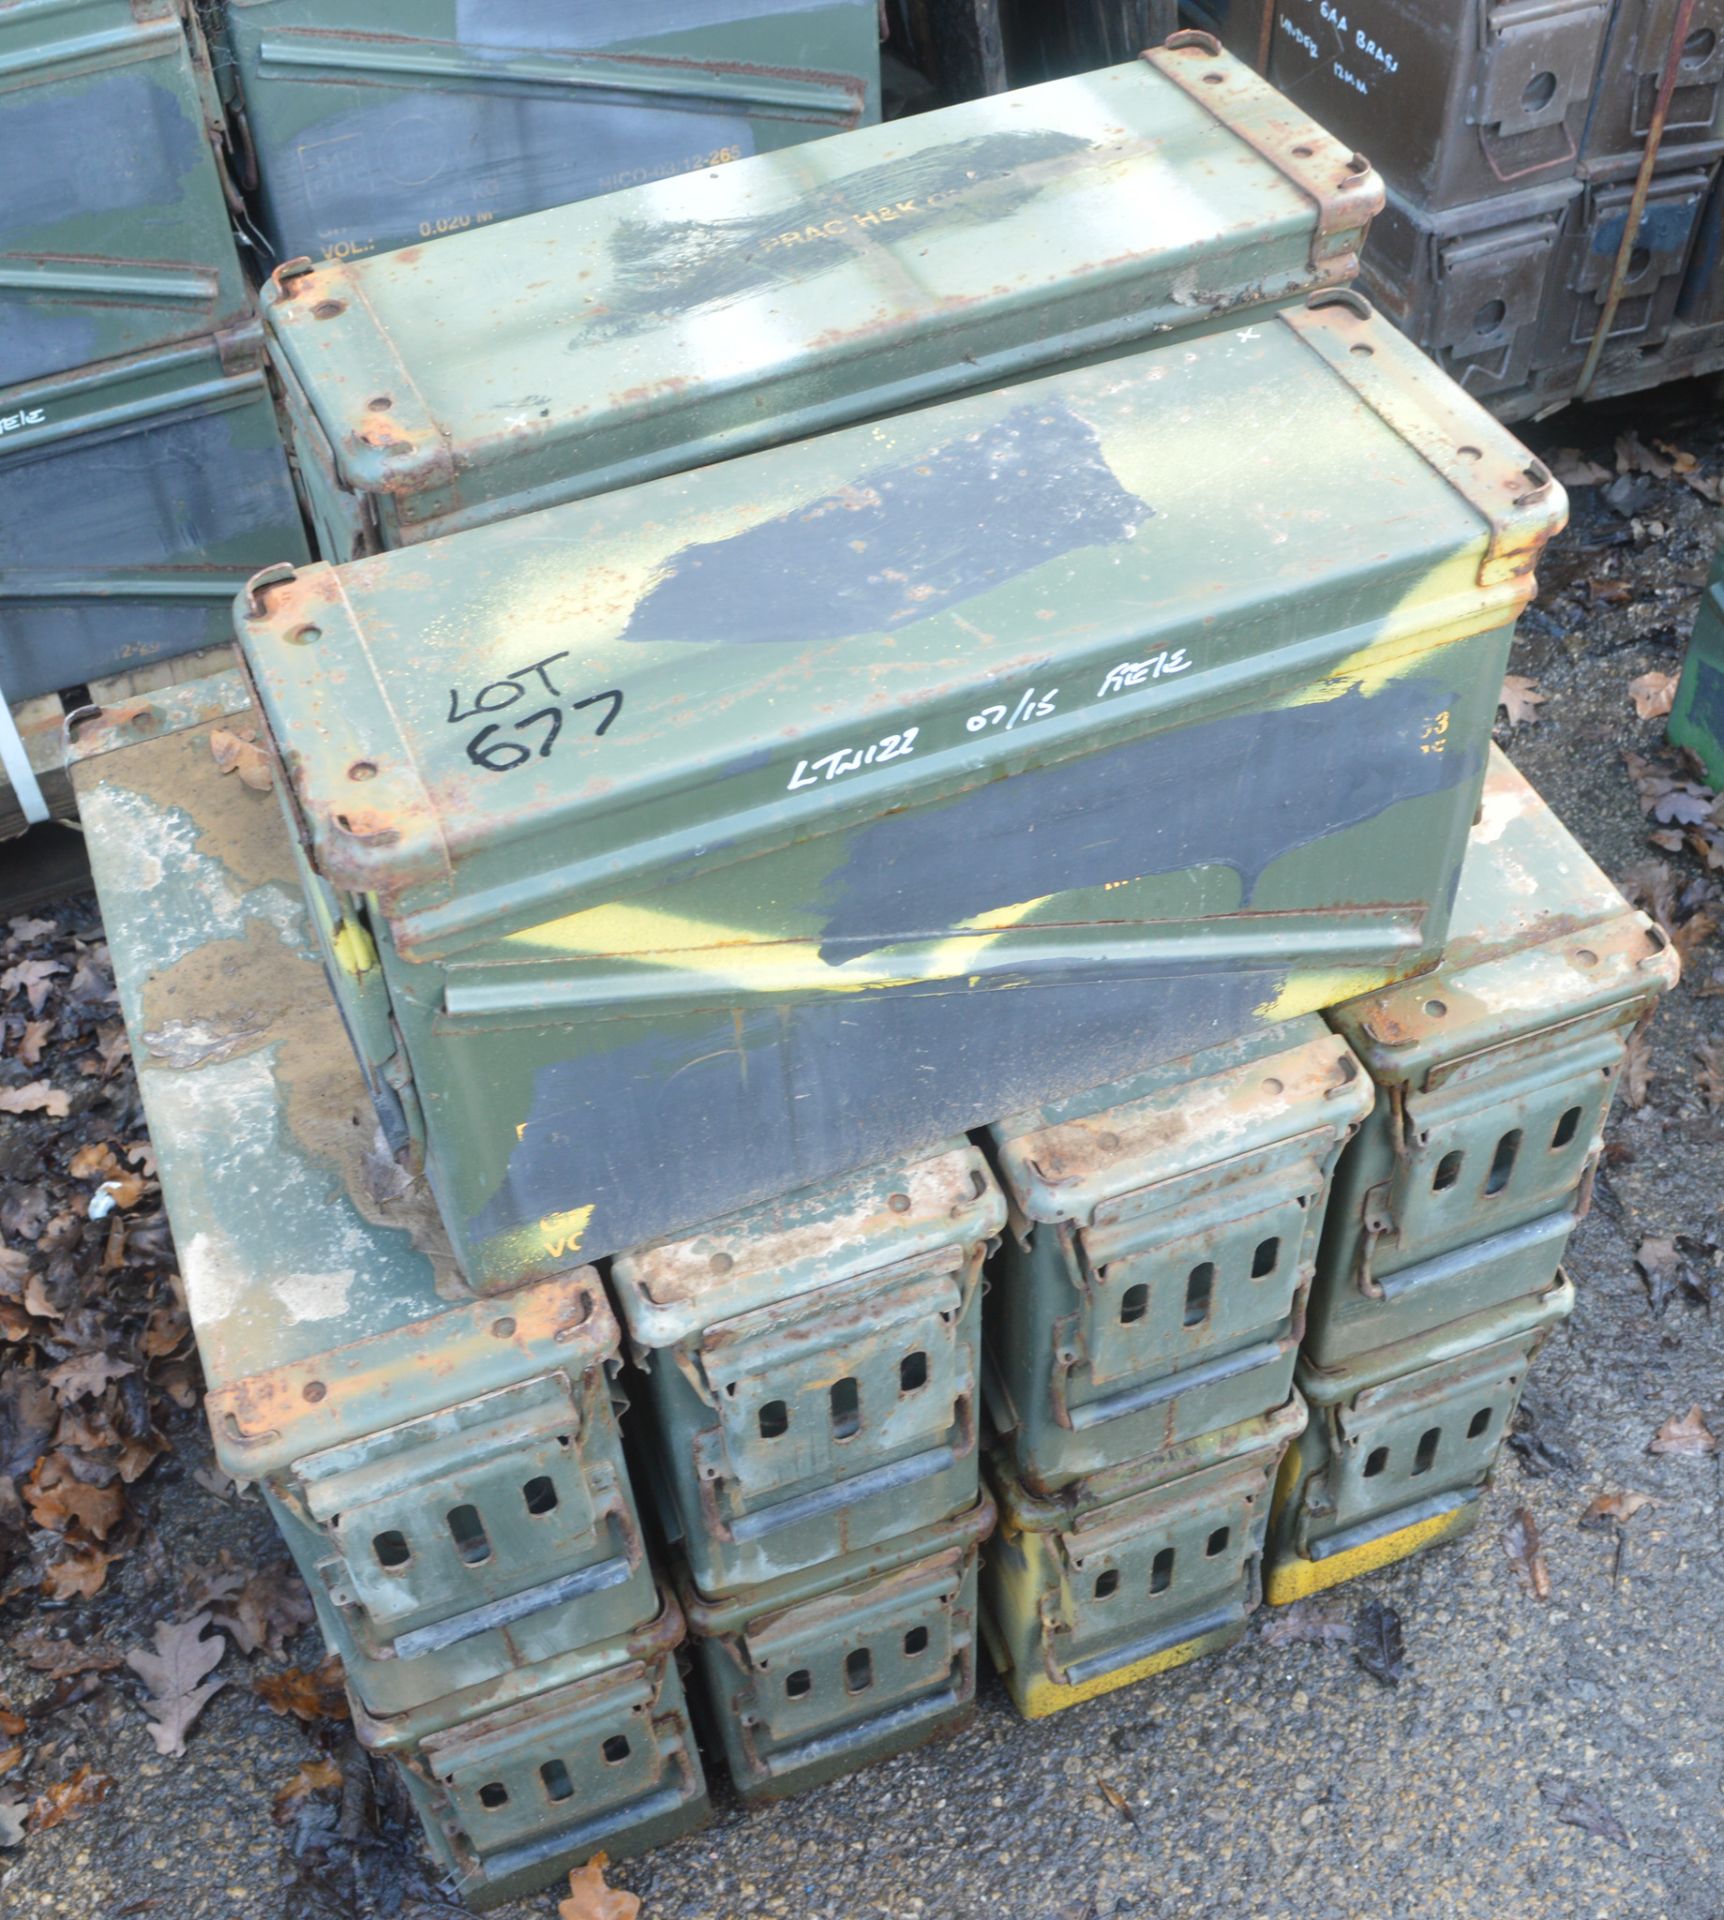 10 - Ex MOD ammunition boxes  (PA 120)